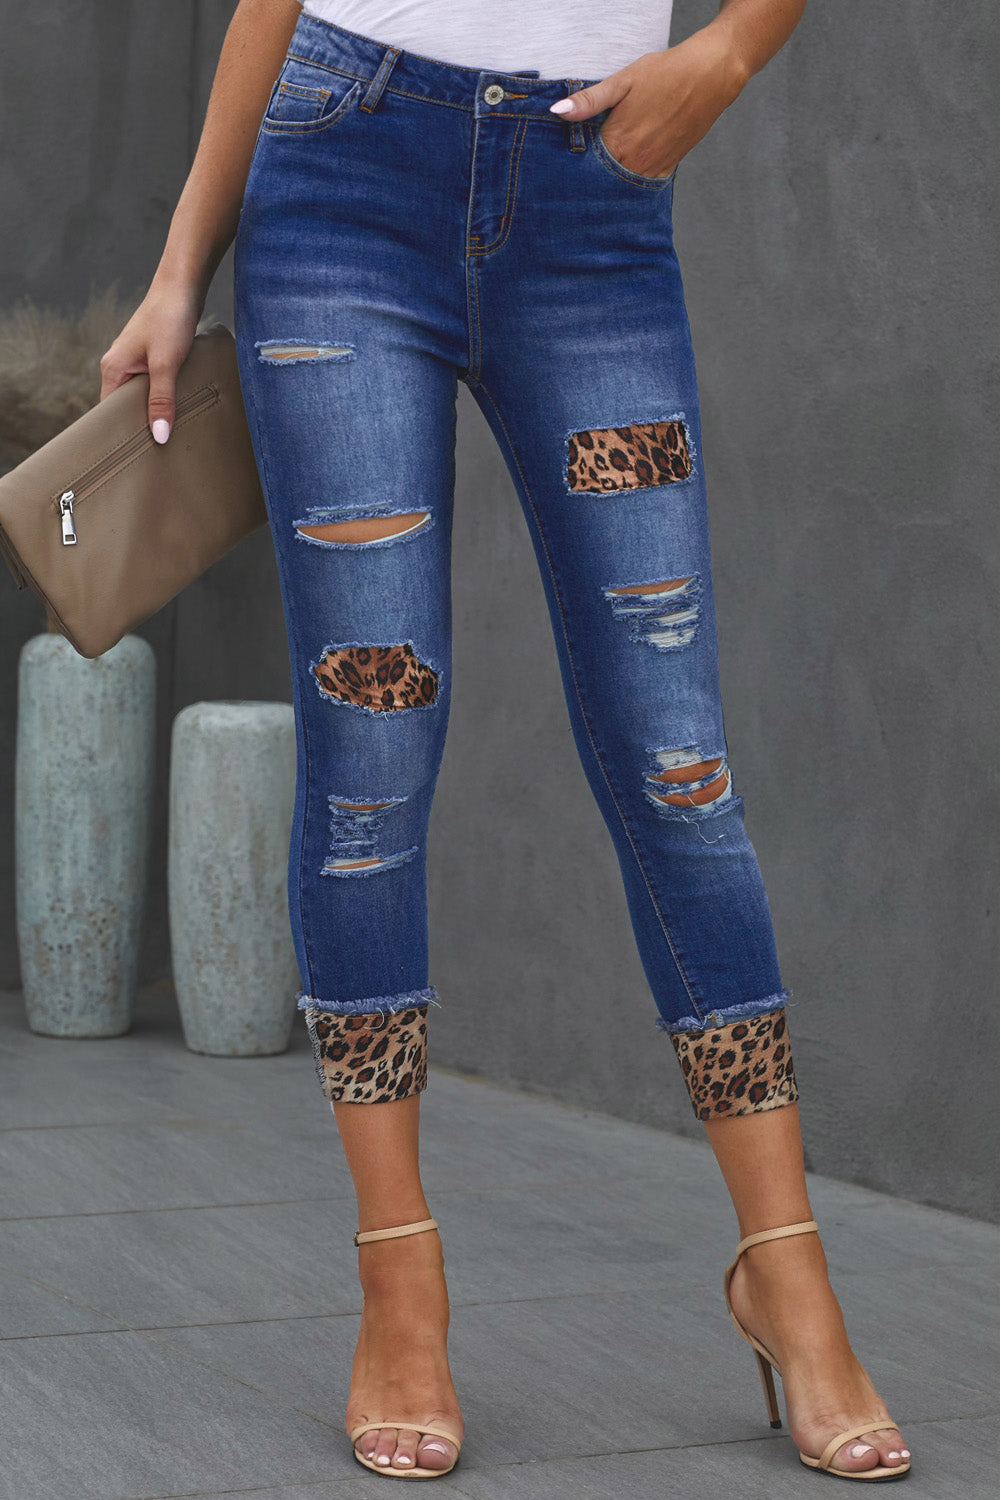 Model wearing leopard print denim jeans.